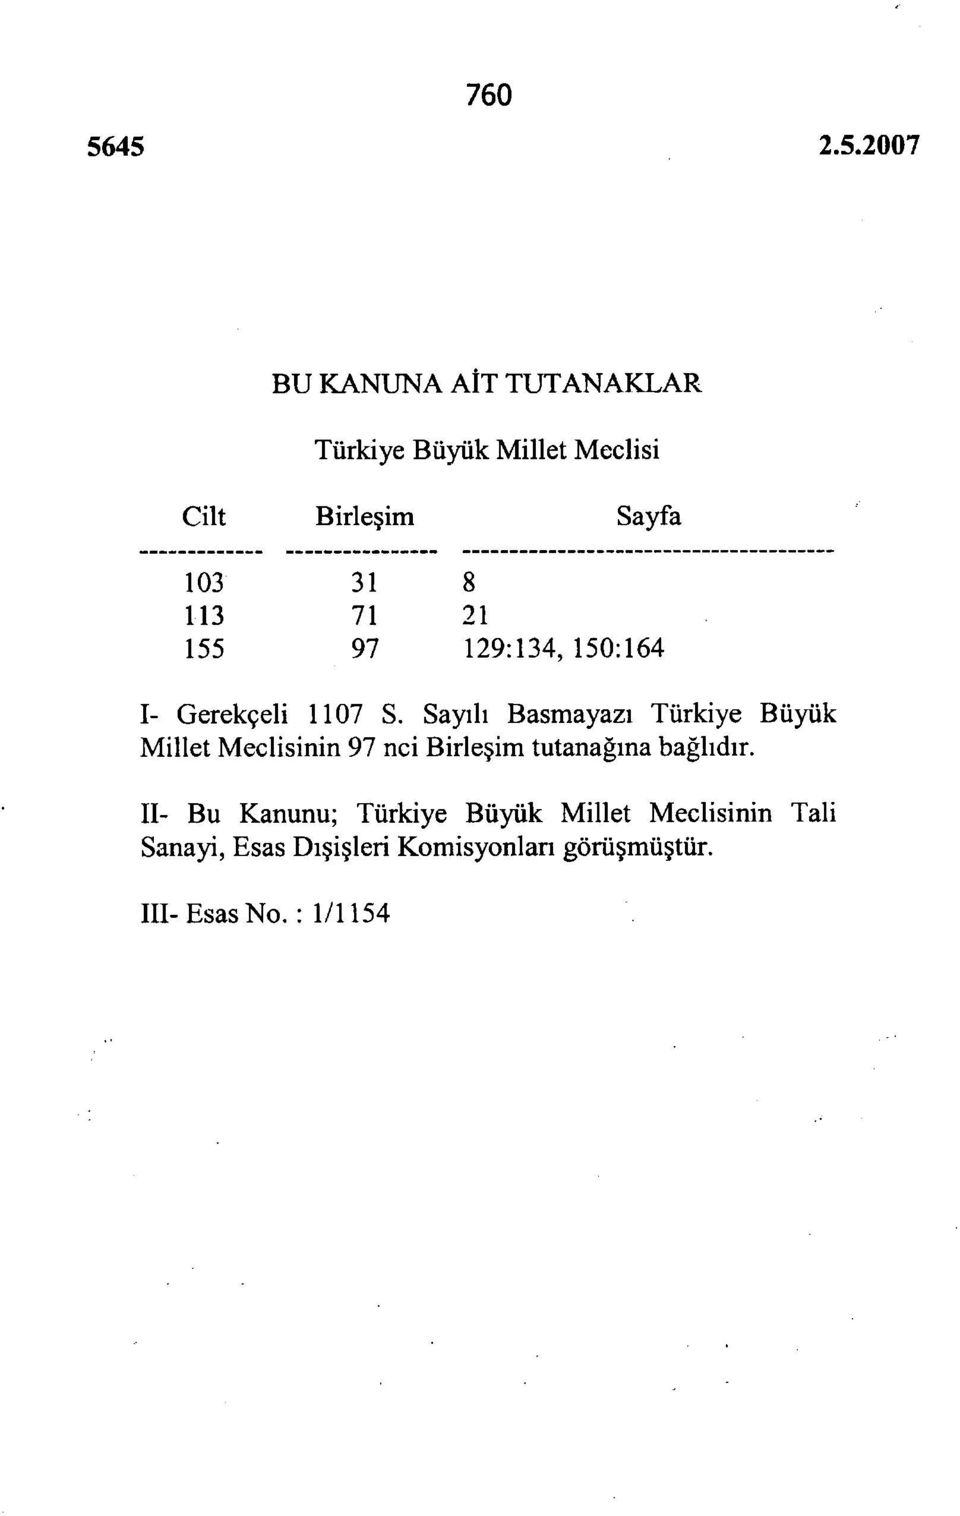 Sayılı Basmayazı Türkiye Büyük Millet Meclisinin 97 nci Birleşim tutanağına bağlıdır.